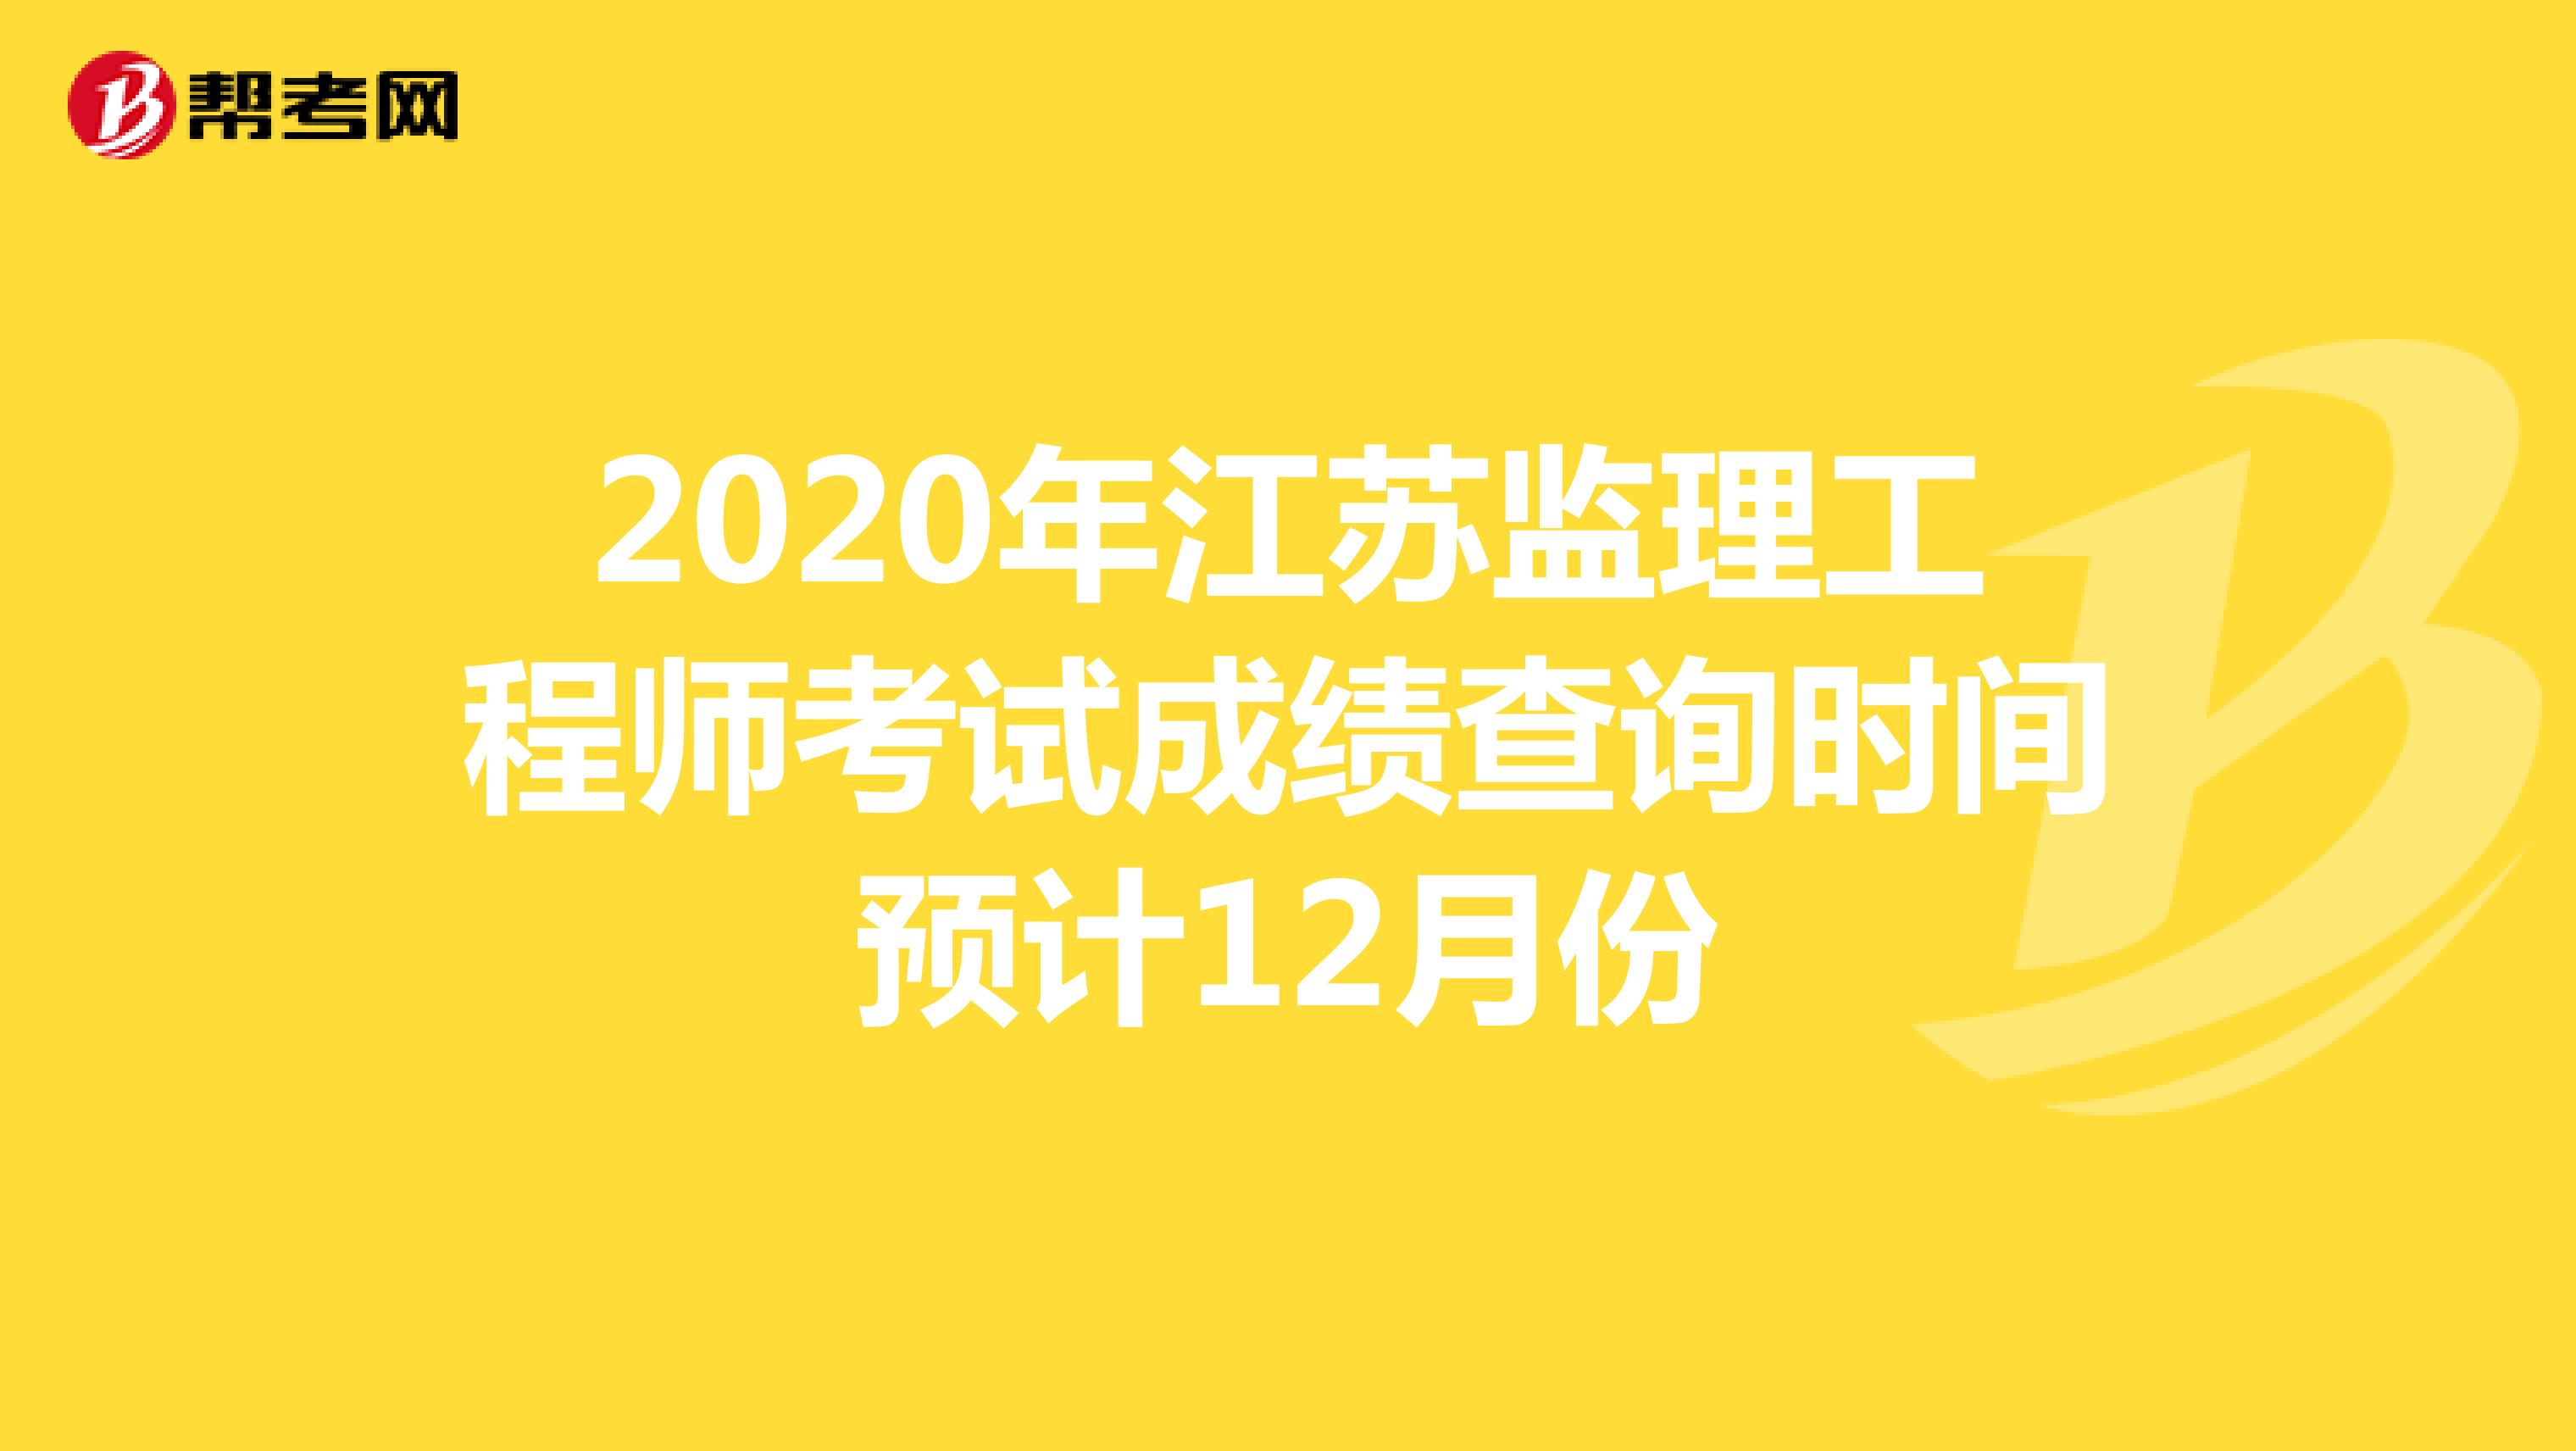 2020年江苏监理工程师考试成绩查询时间预计12月份